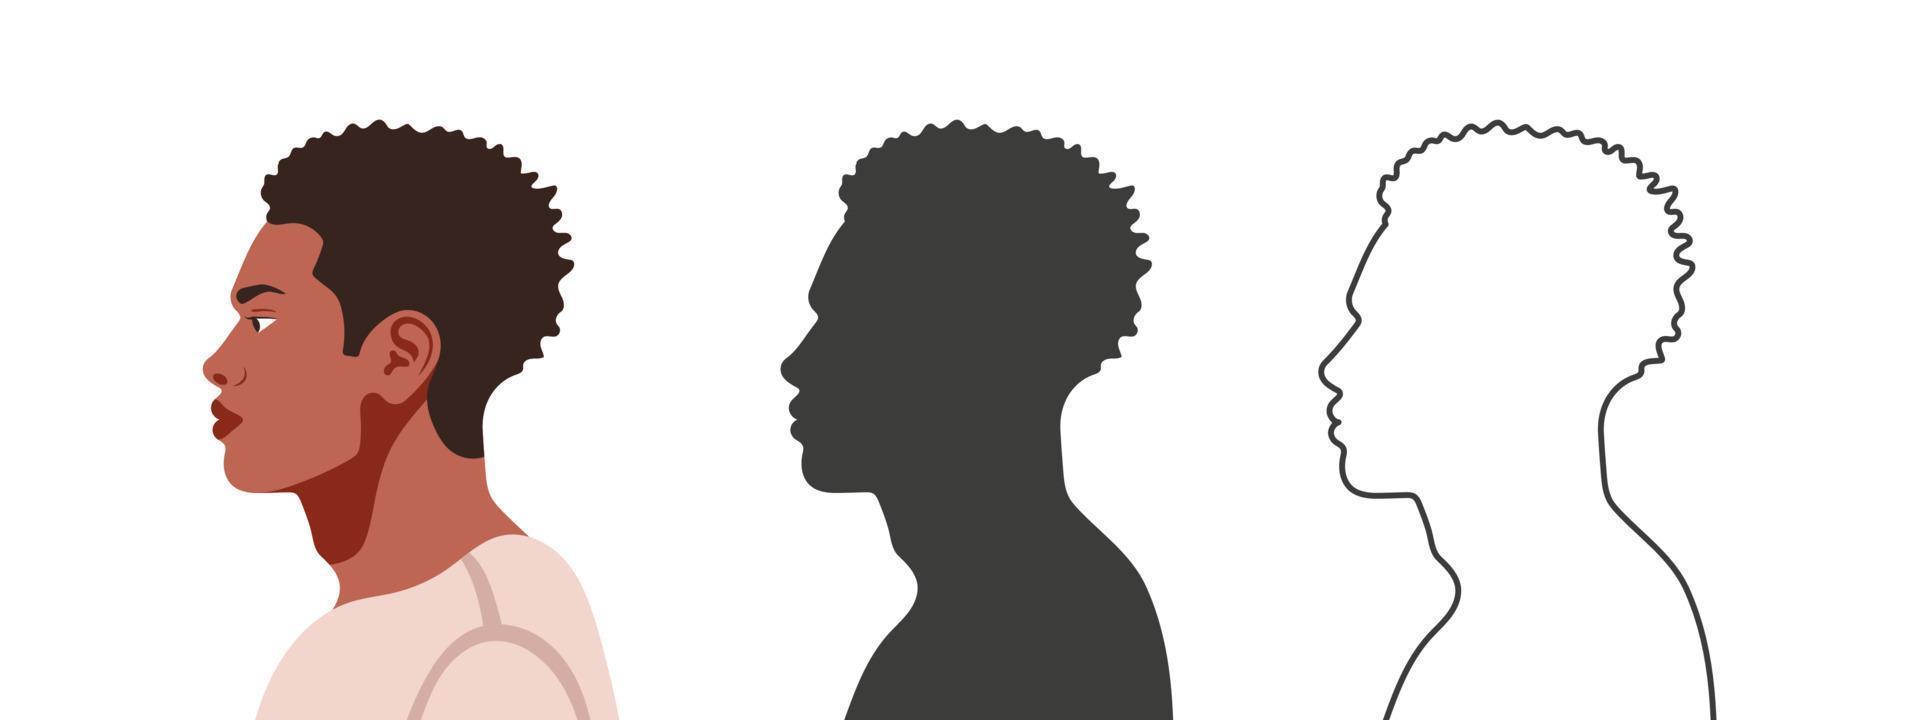 hoofden in profiel. gezicht van de kant. silhouetten van mensen in drie verschillend stijlen. profiel van een gezicht. vector illustratie